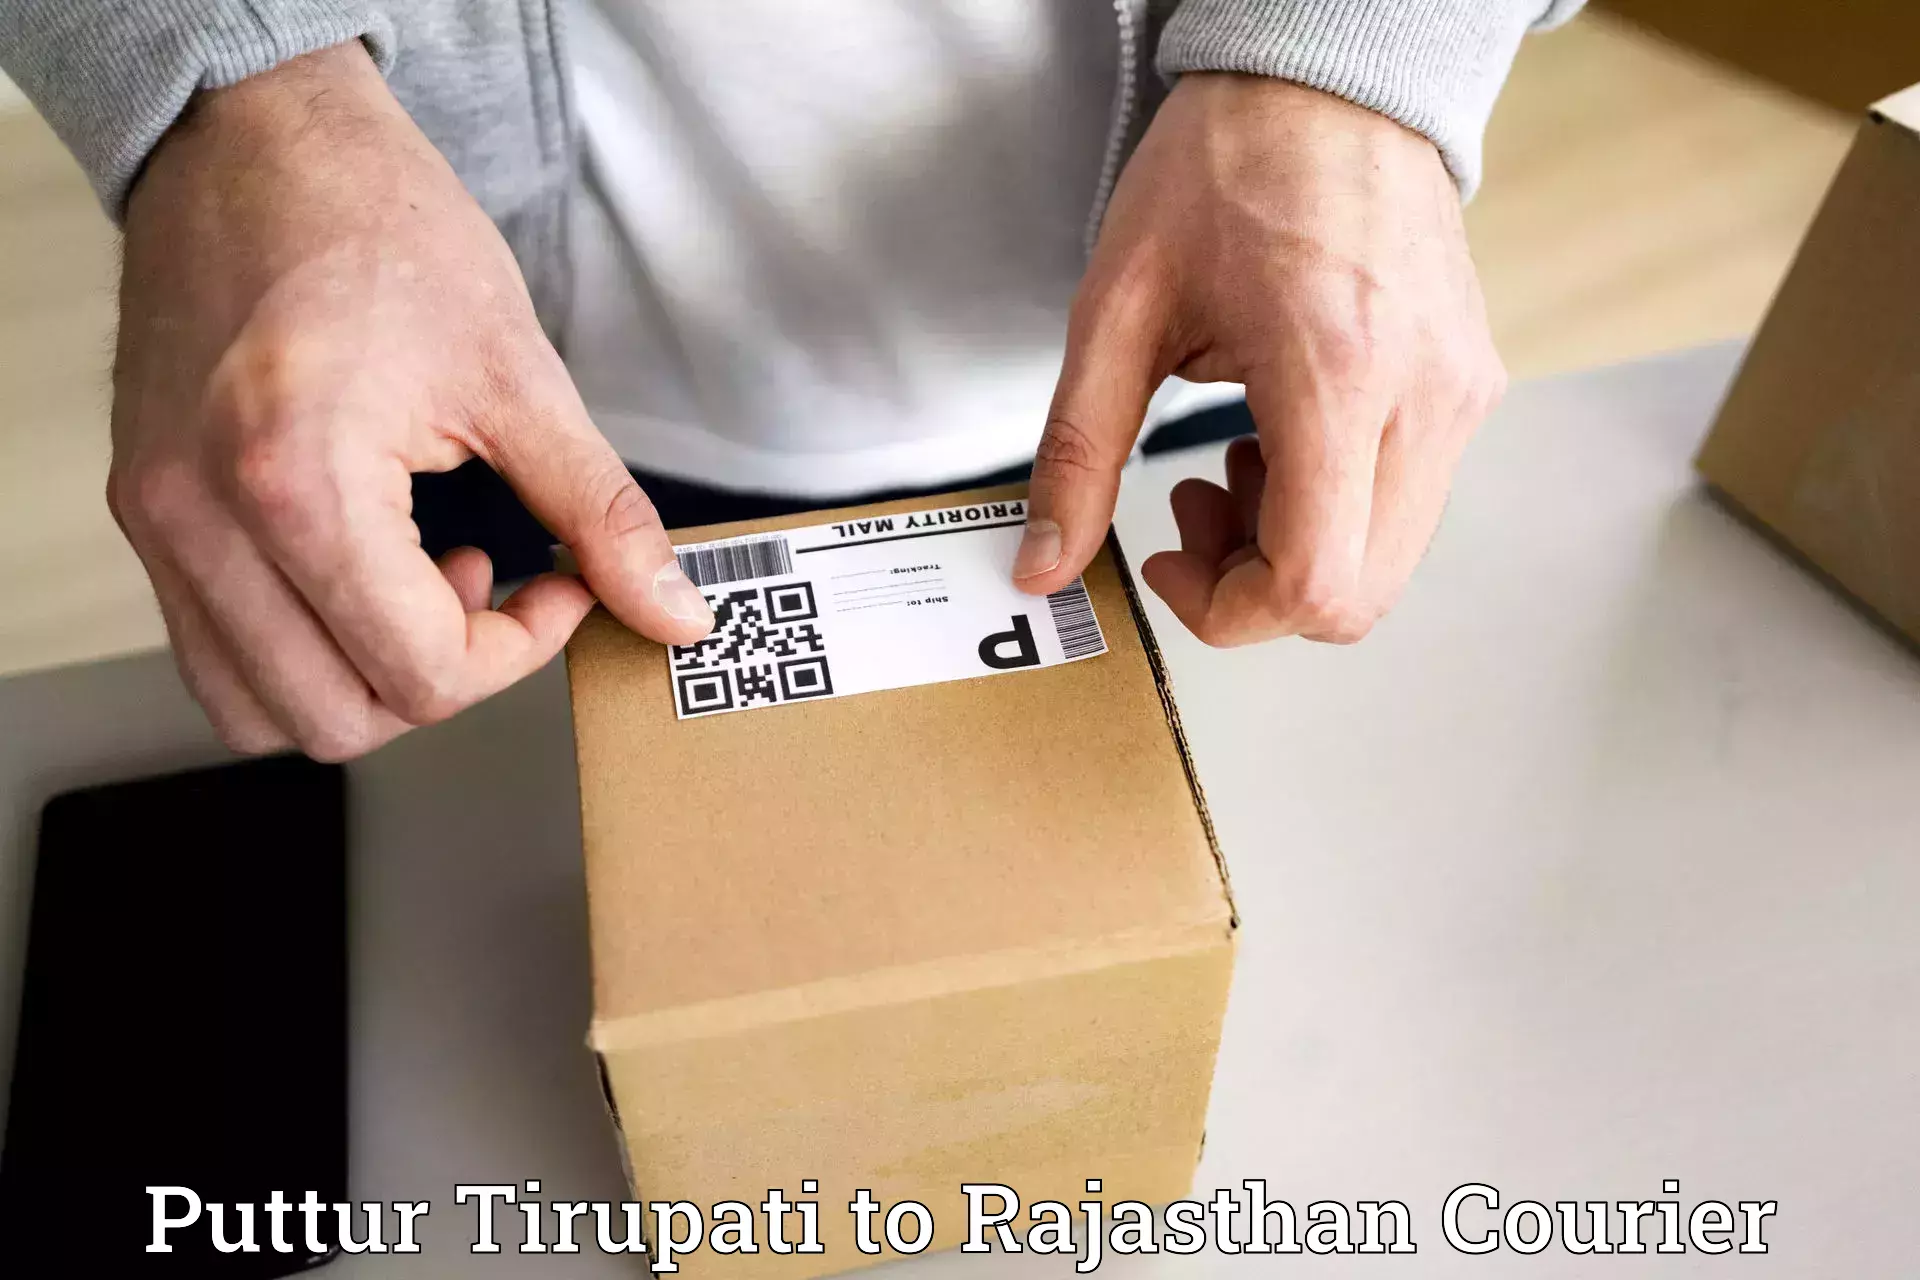 Same-day delivery solutions Puttur Tirupati to Kalwar